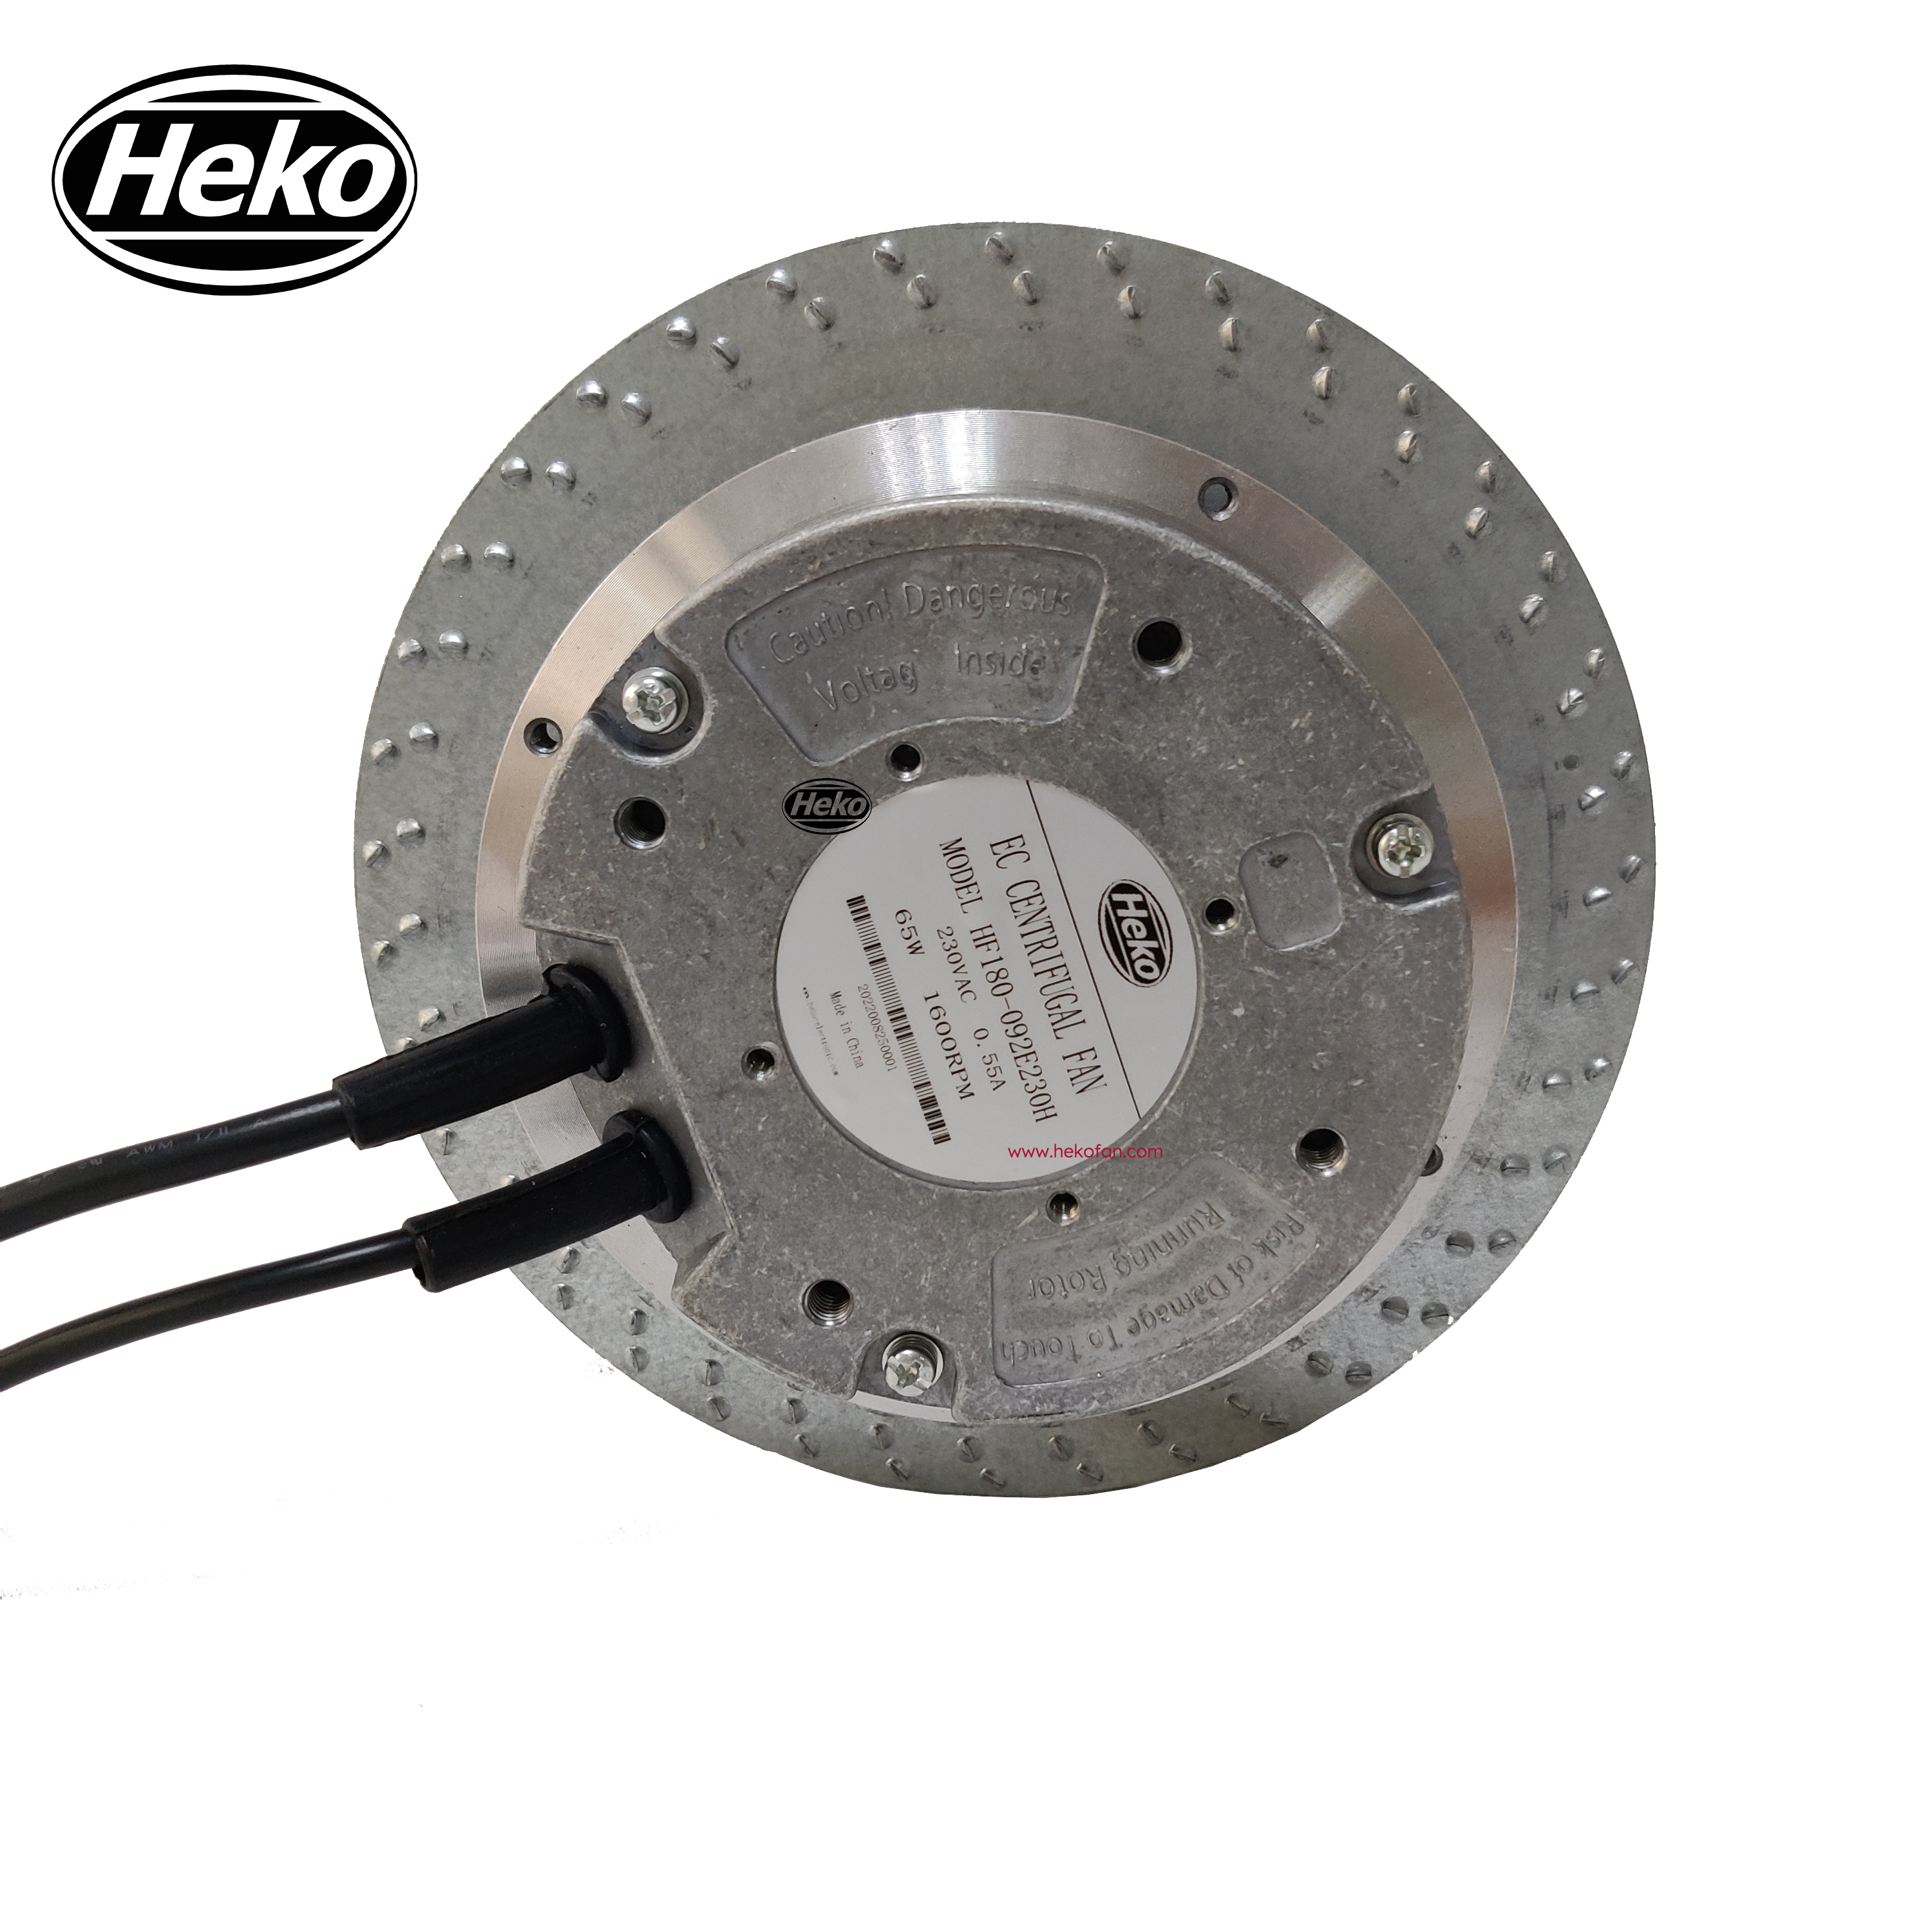 Ventilador centrífugo de alta velocidad HEKO EC180mm para baño